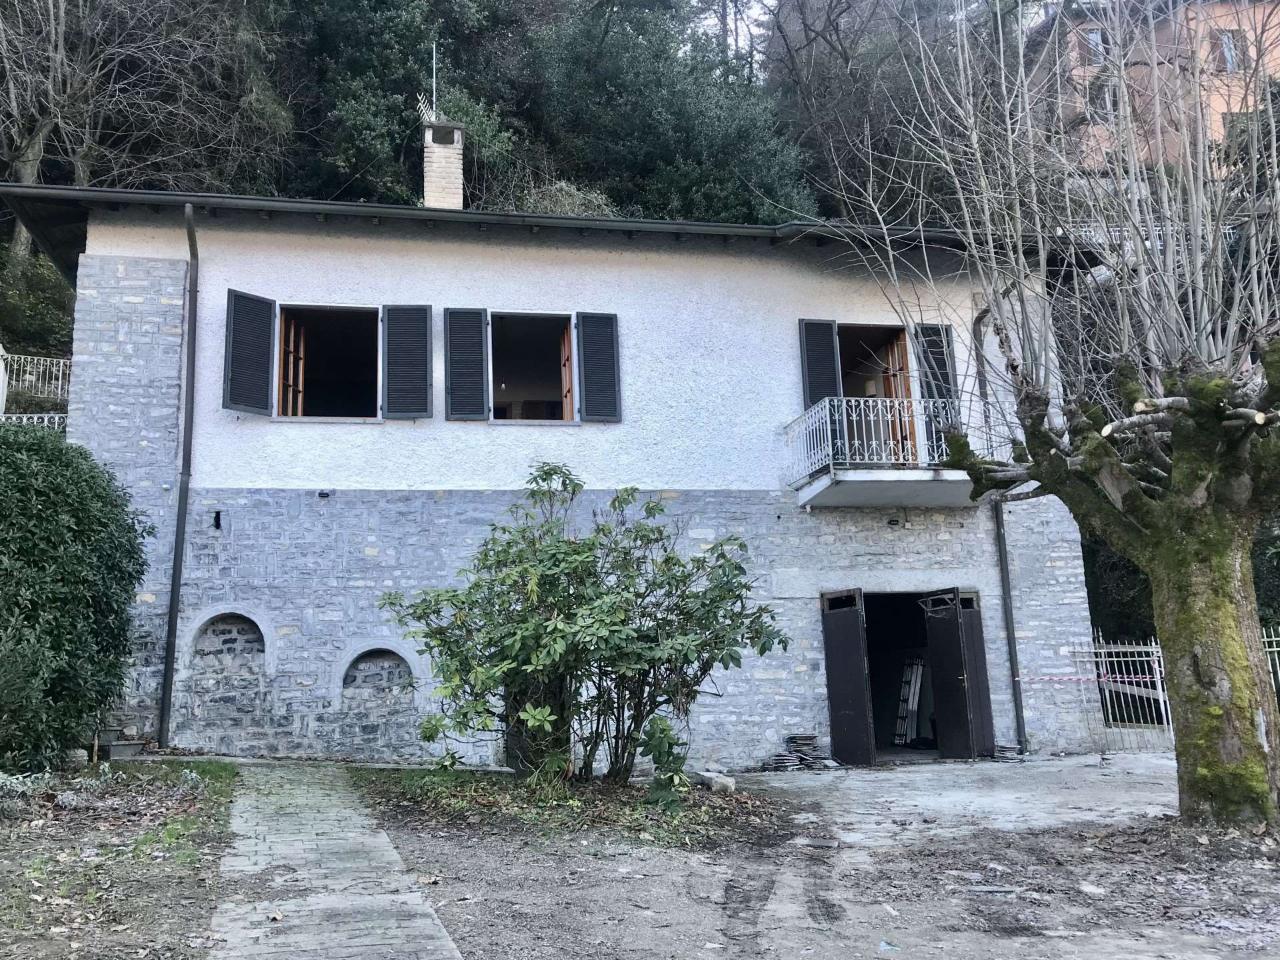 Villa unifamiliare in vendita a Faggeto Lario